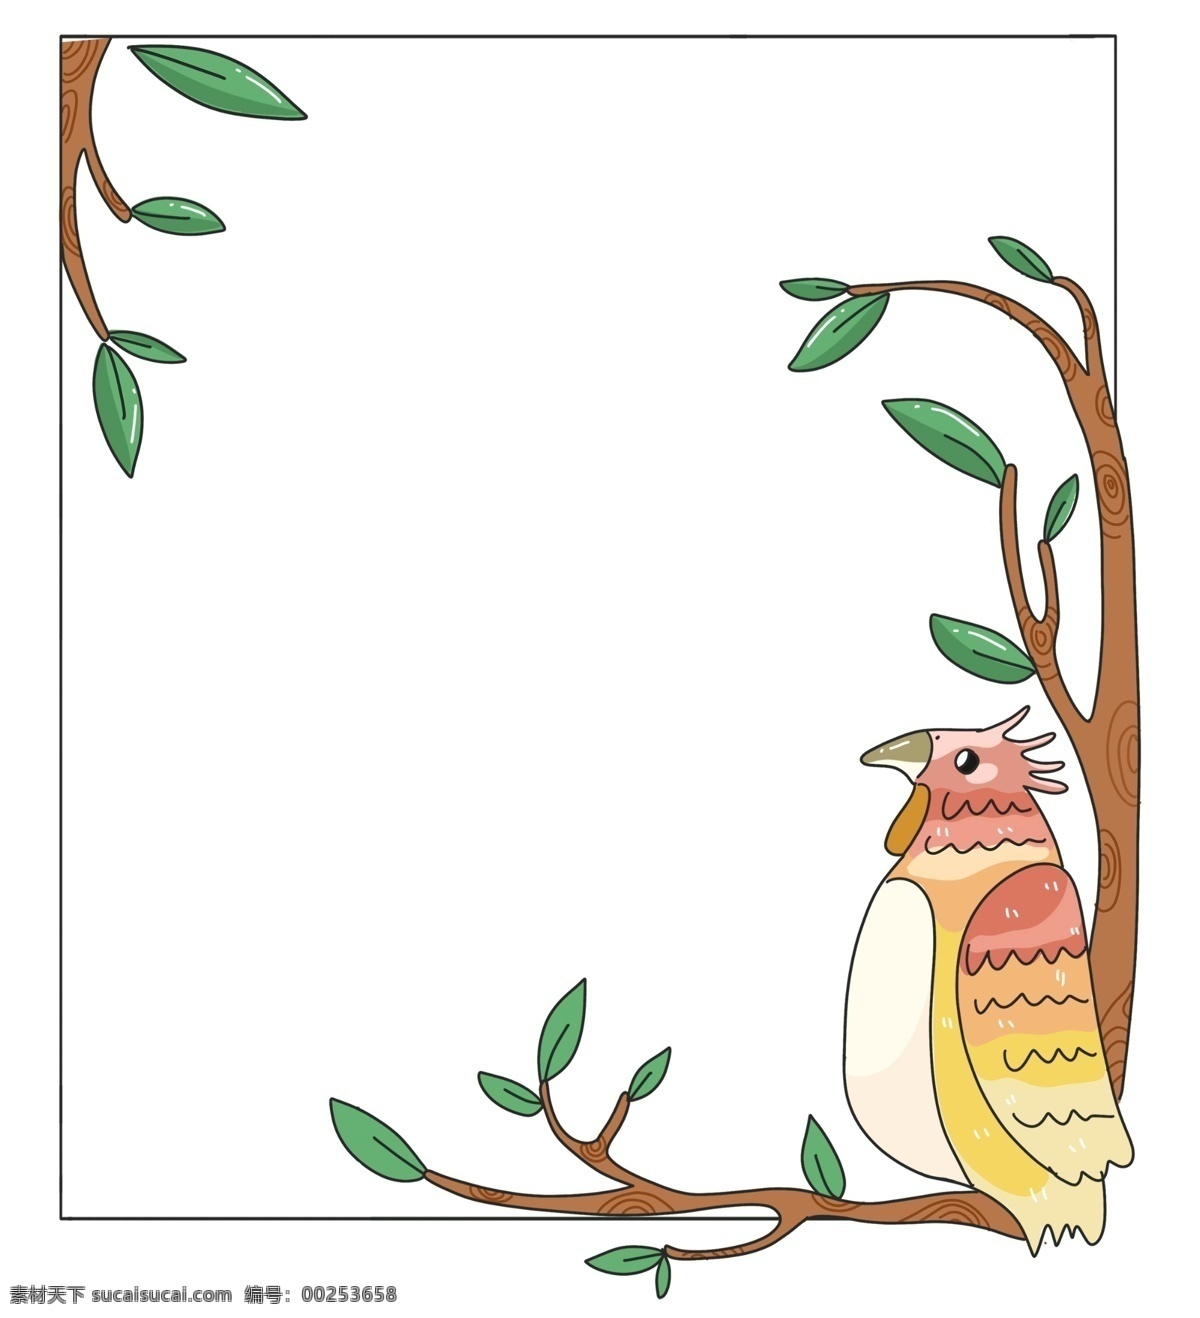 可爱 啄木鸟 边框 绿色的叶子 卡通边框 美丽边框 漂亮边框 小物边框 物品边框 可爱的啄木鸟